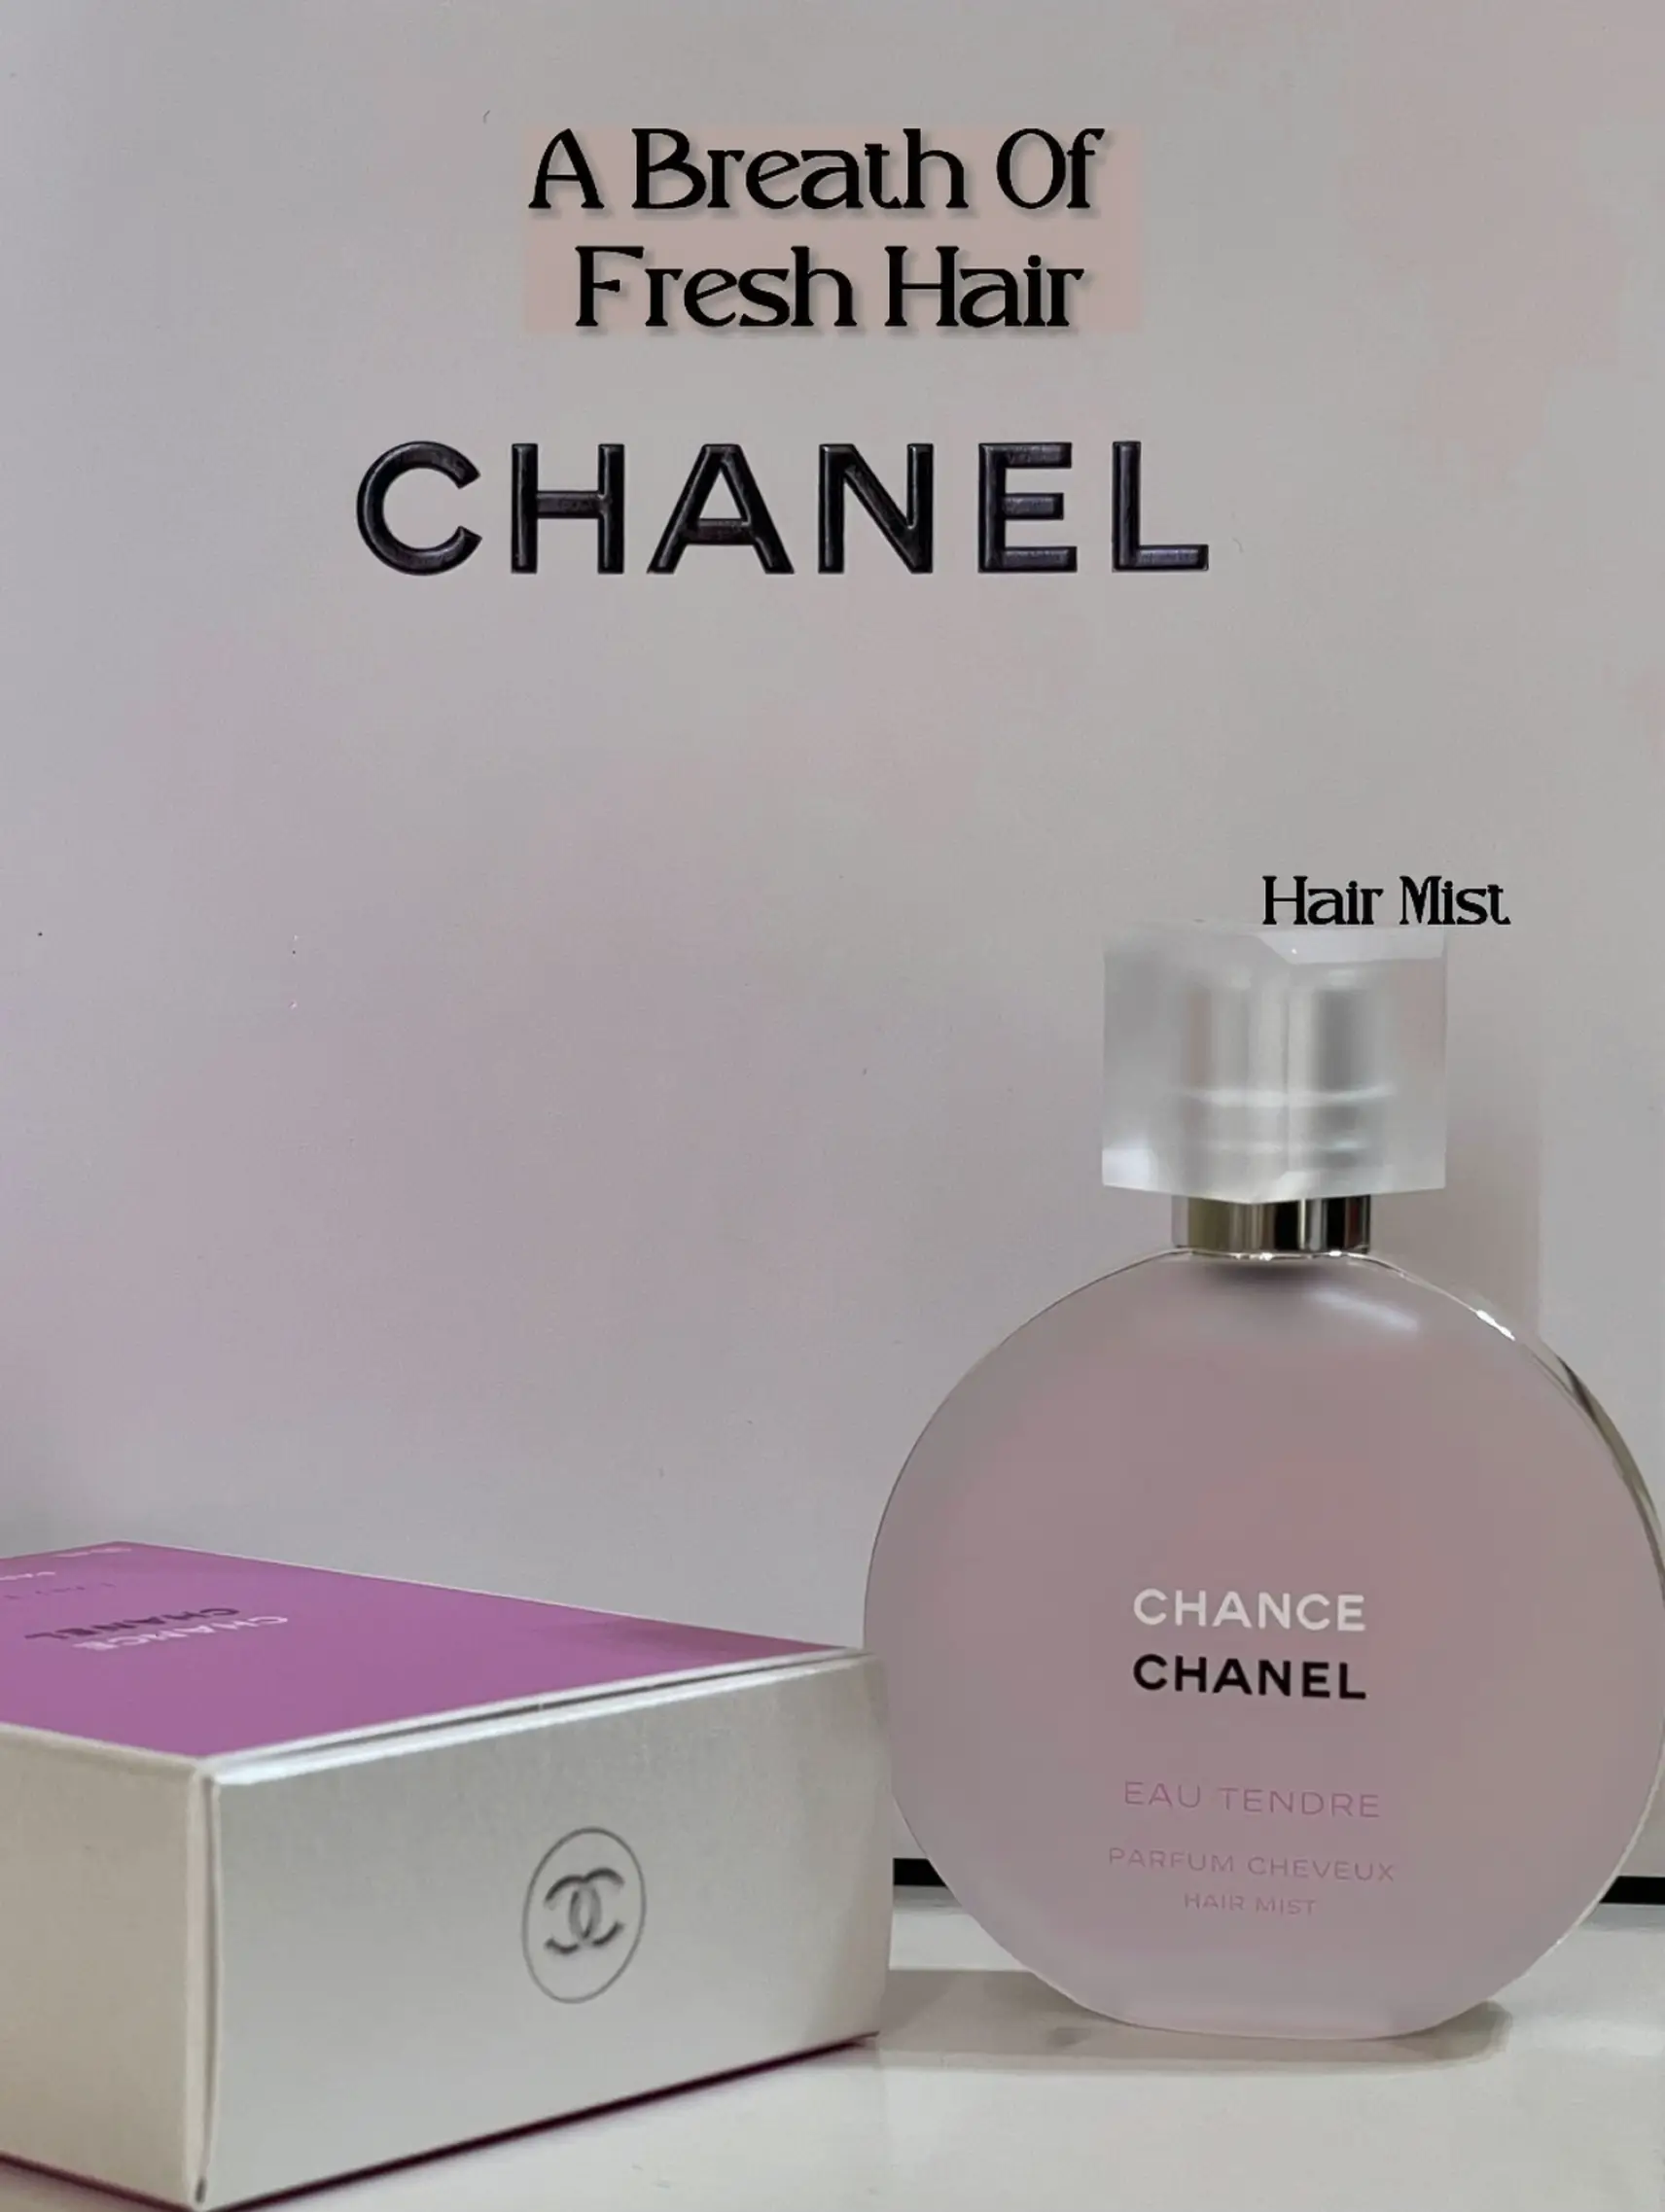 Fragrance Your Hair With Chanel Hair Mist